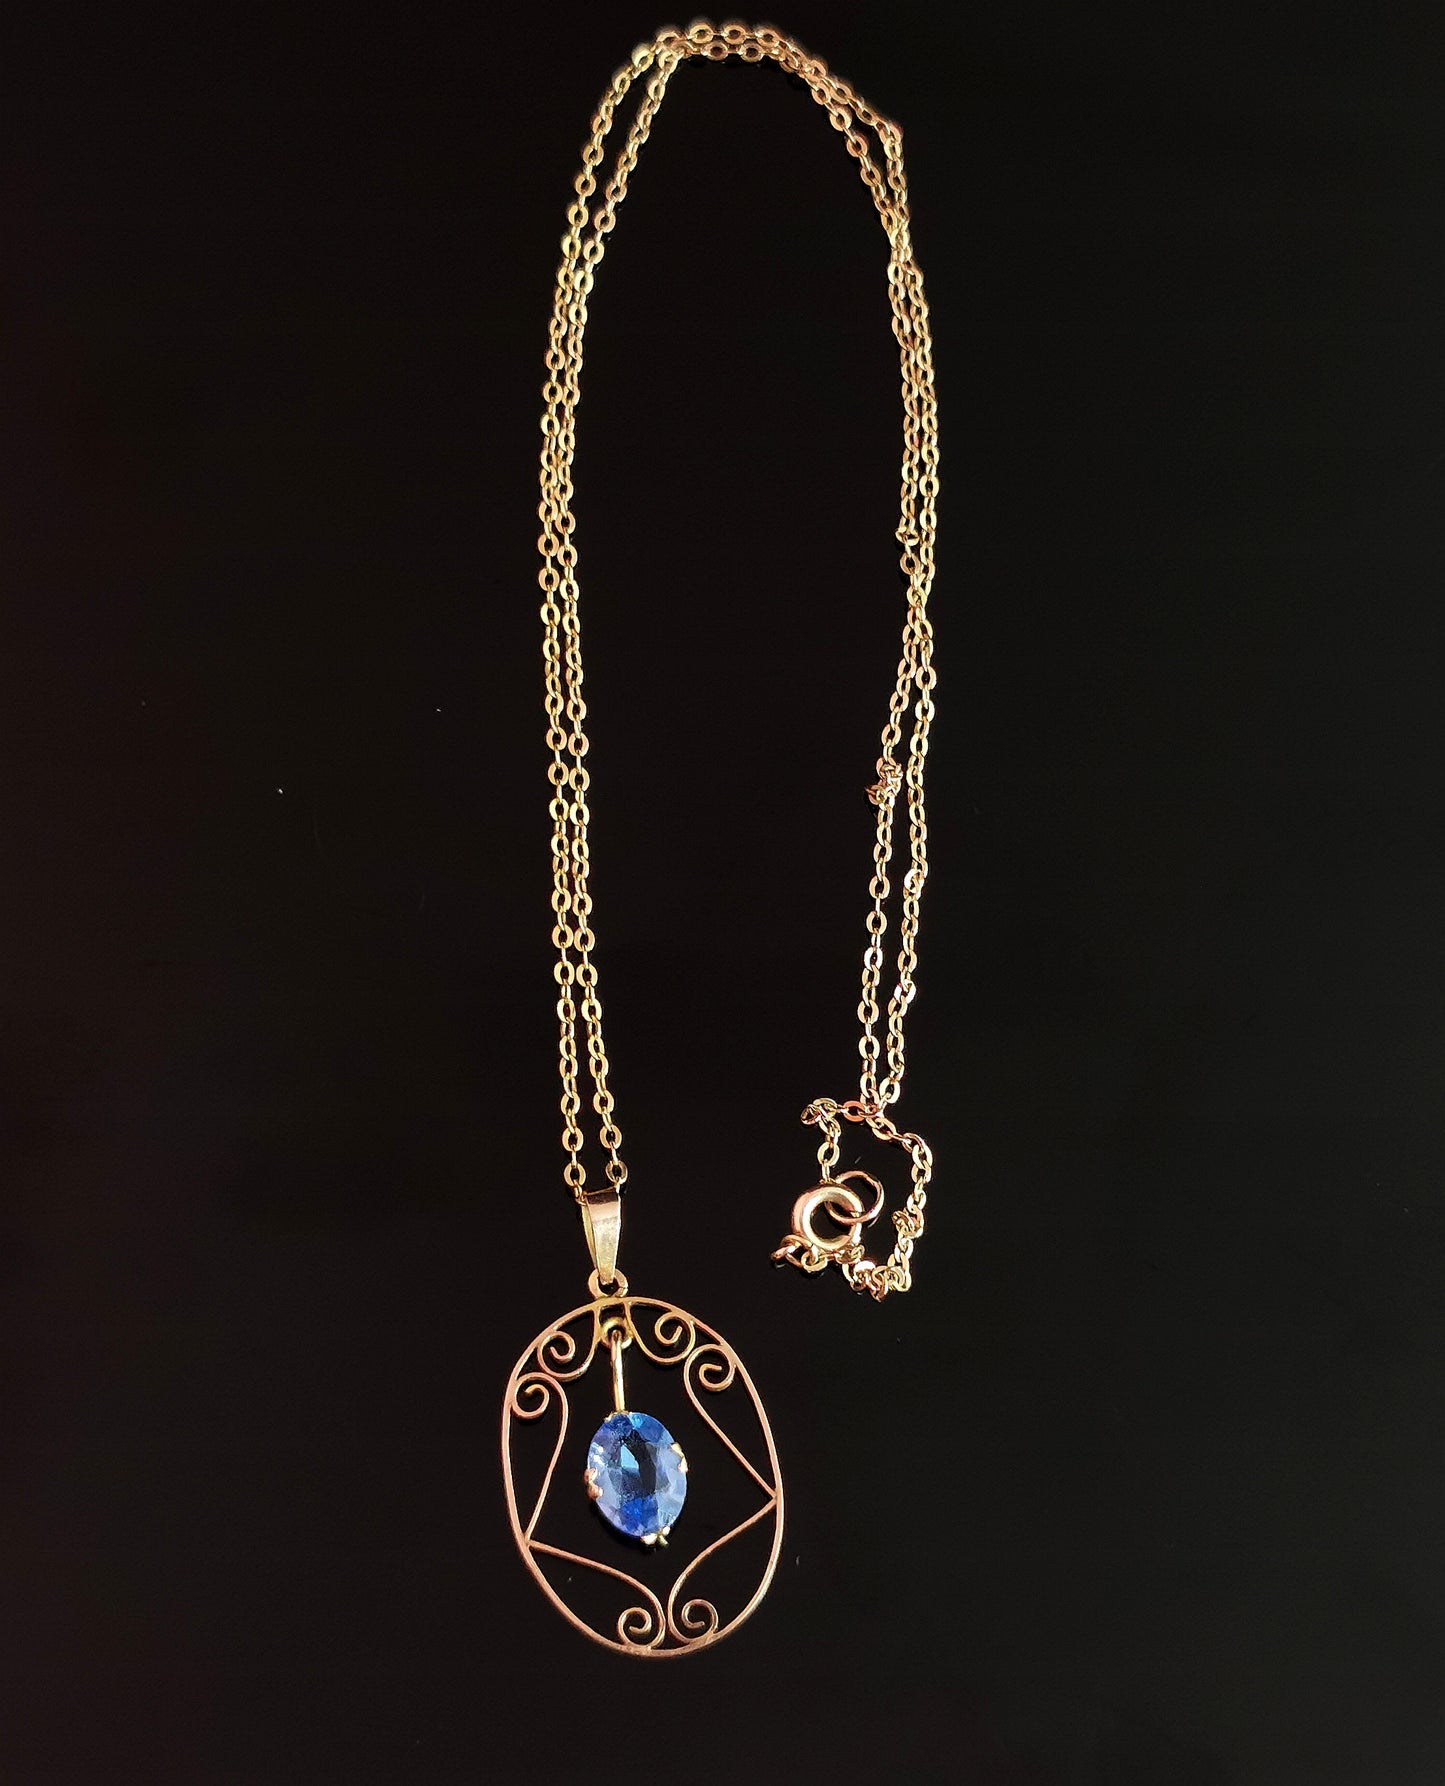 Antique Art Nouveau Blue paste pendant necklace, 9ct gold